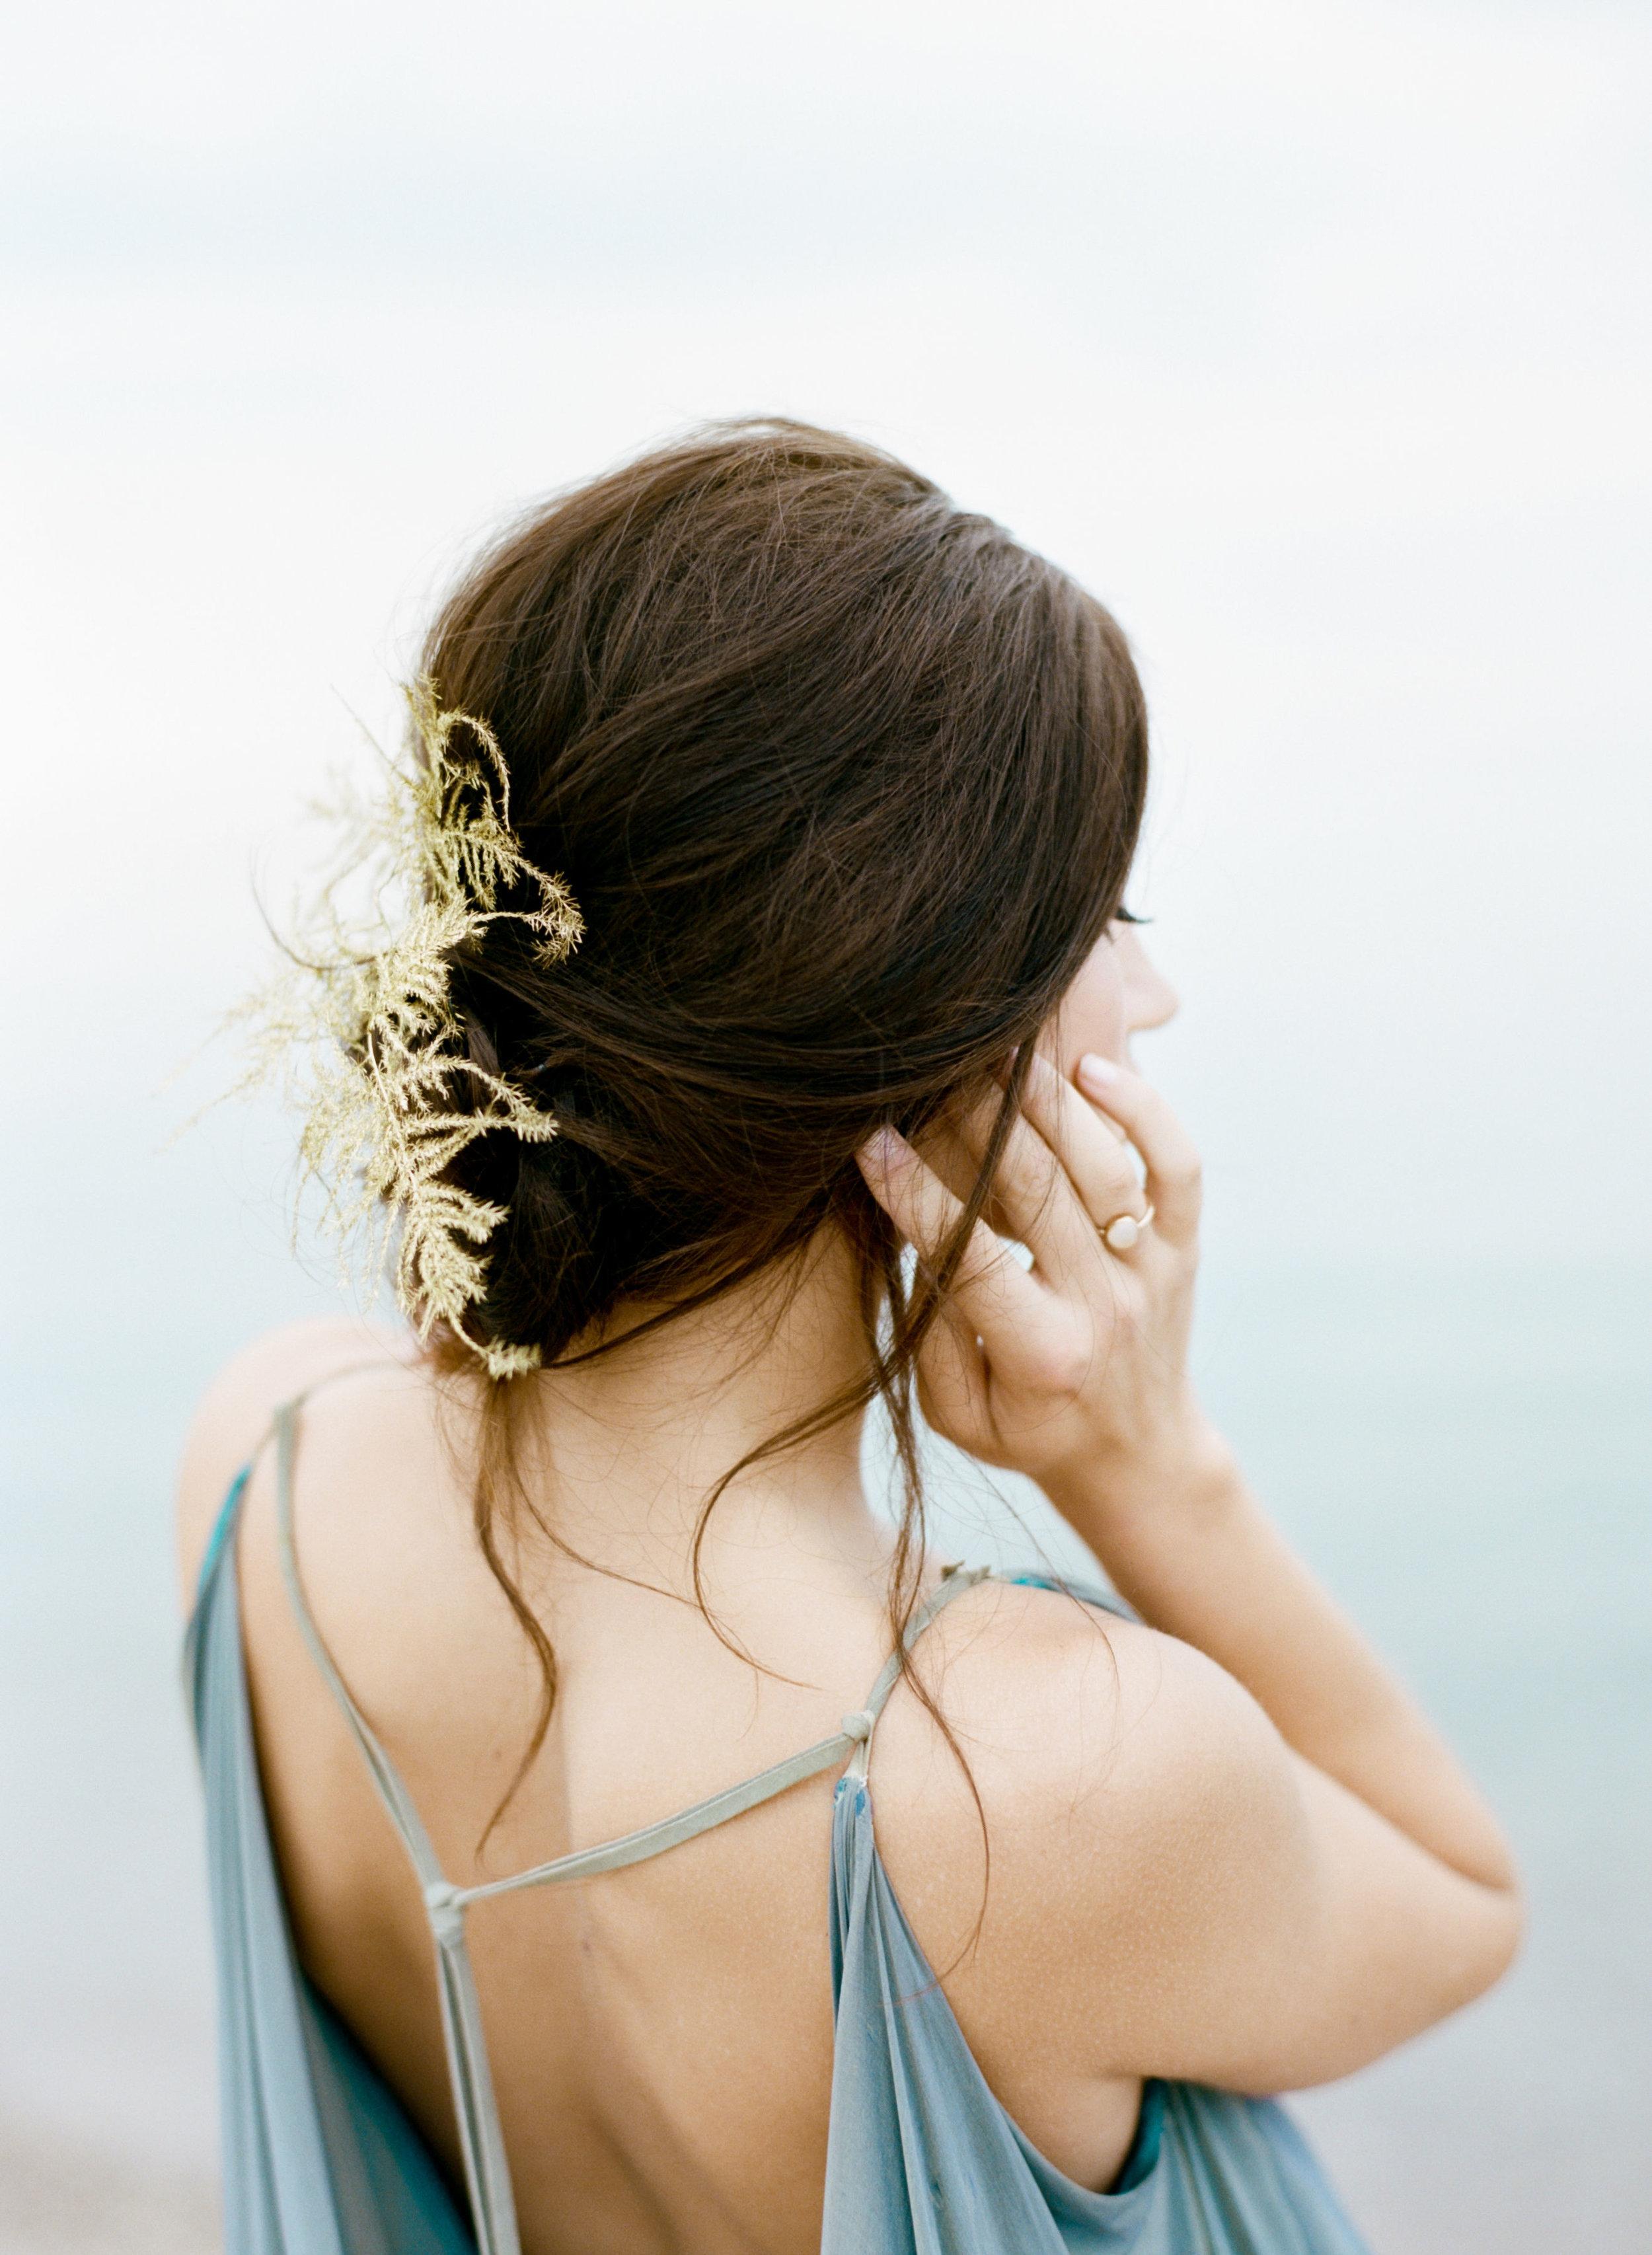 Ianassa 9 - relaxed blue flowing beach wedding dress.jpg